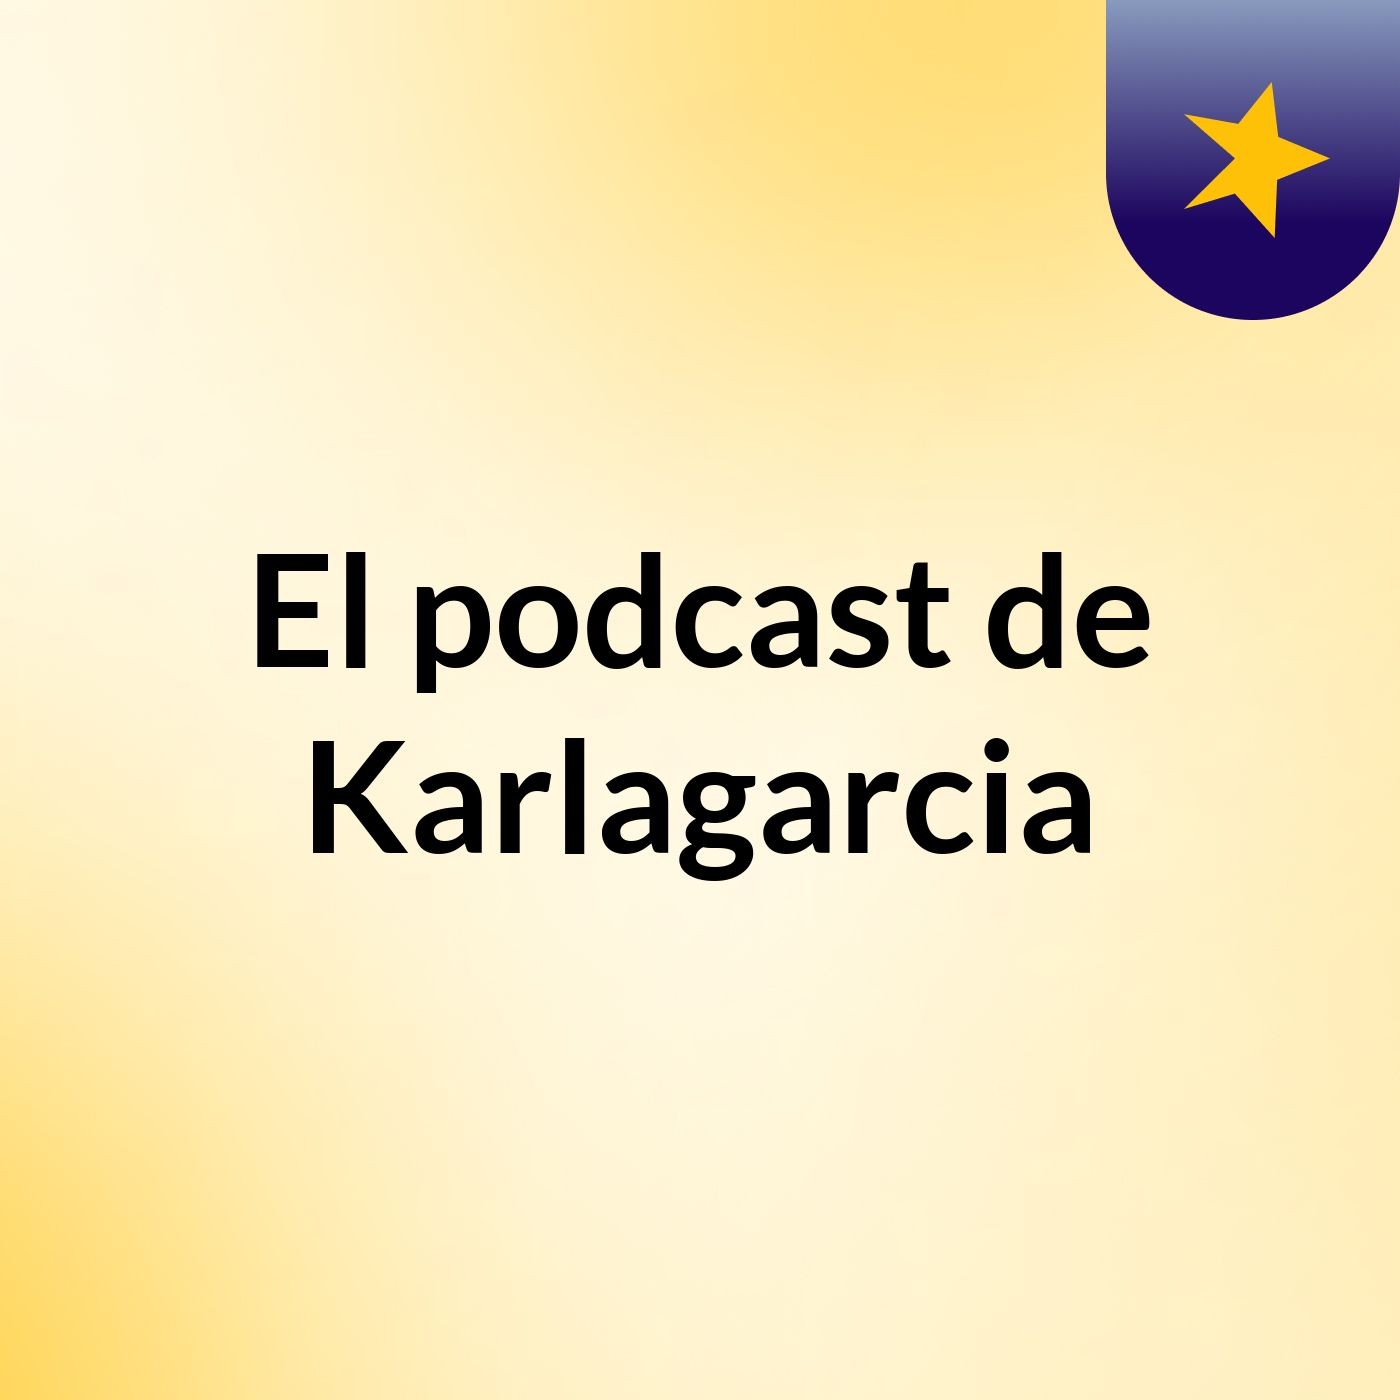 Episodio 5 - El podcast de Karlagarcia